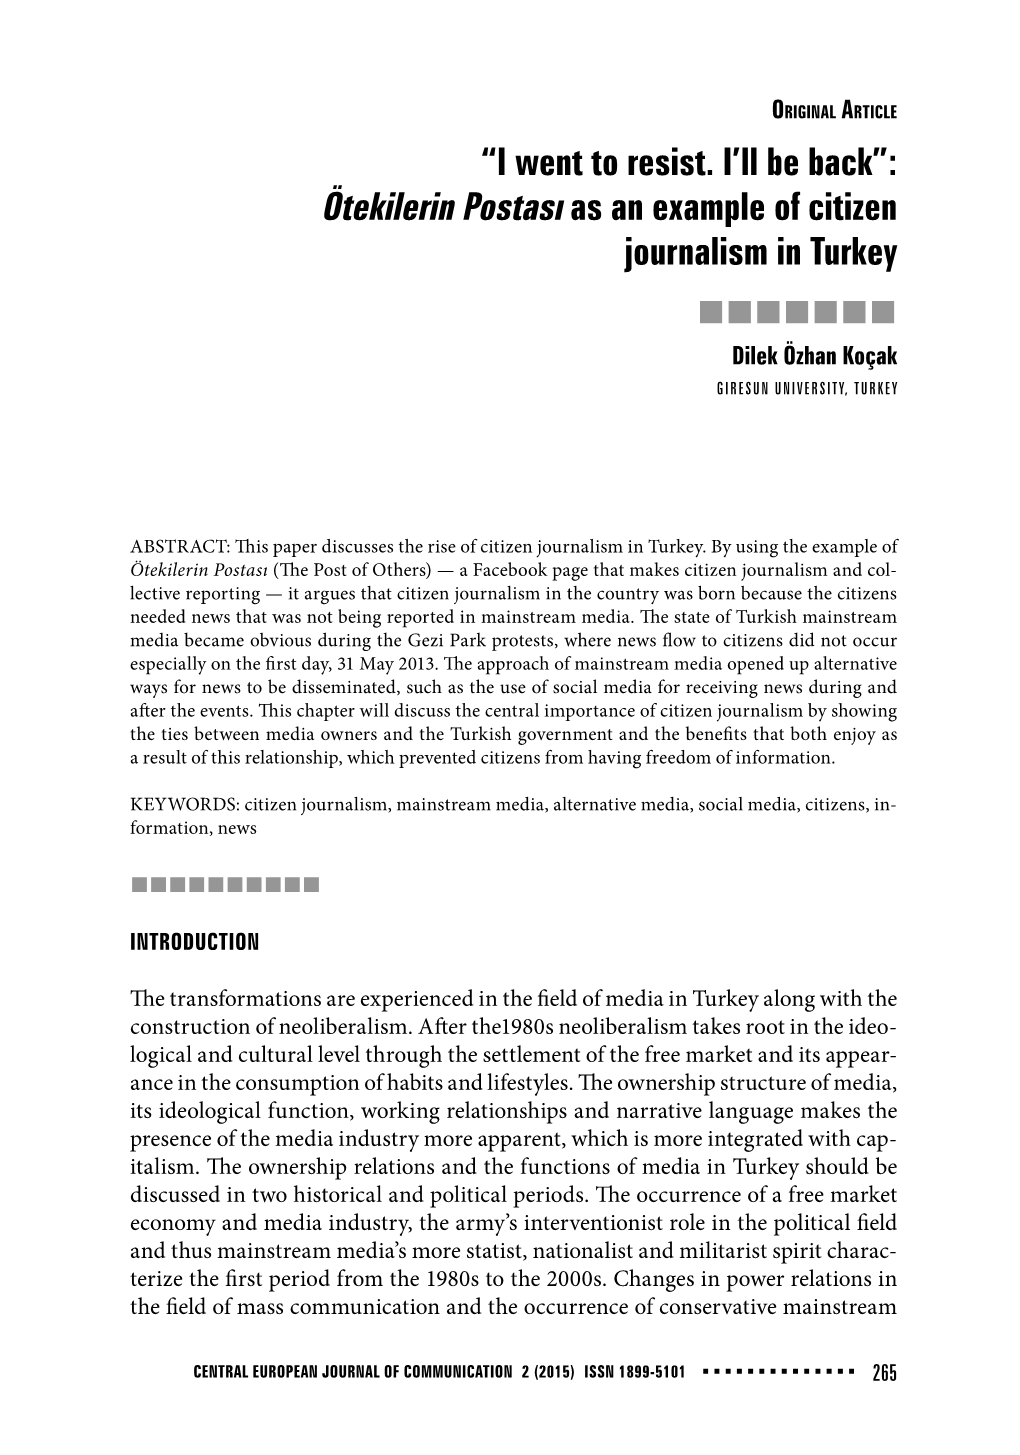 Ötekilerin Postası As an Example of Citizen Journalism in Turkey  Dilek Özhan Koçak GIRESUN UNIVERSITY, TURKEY